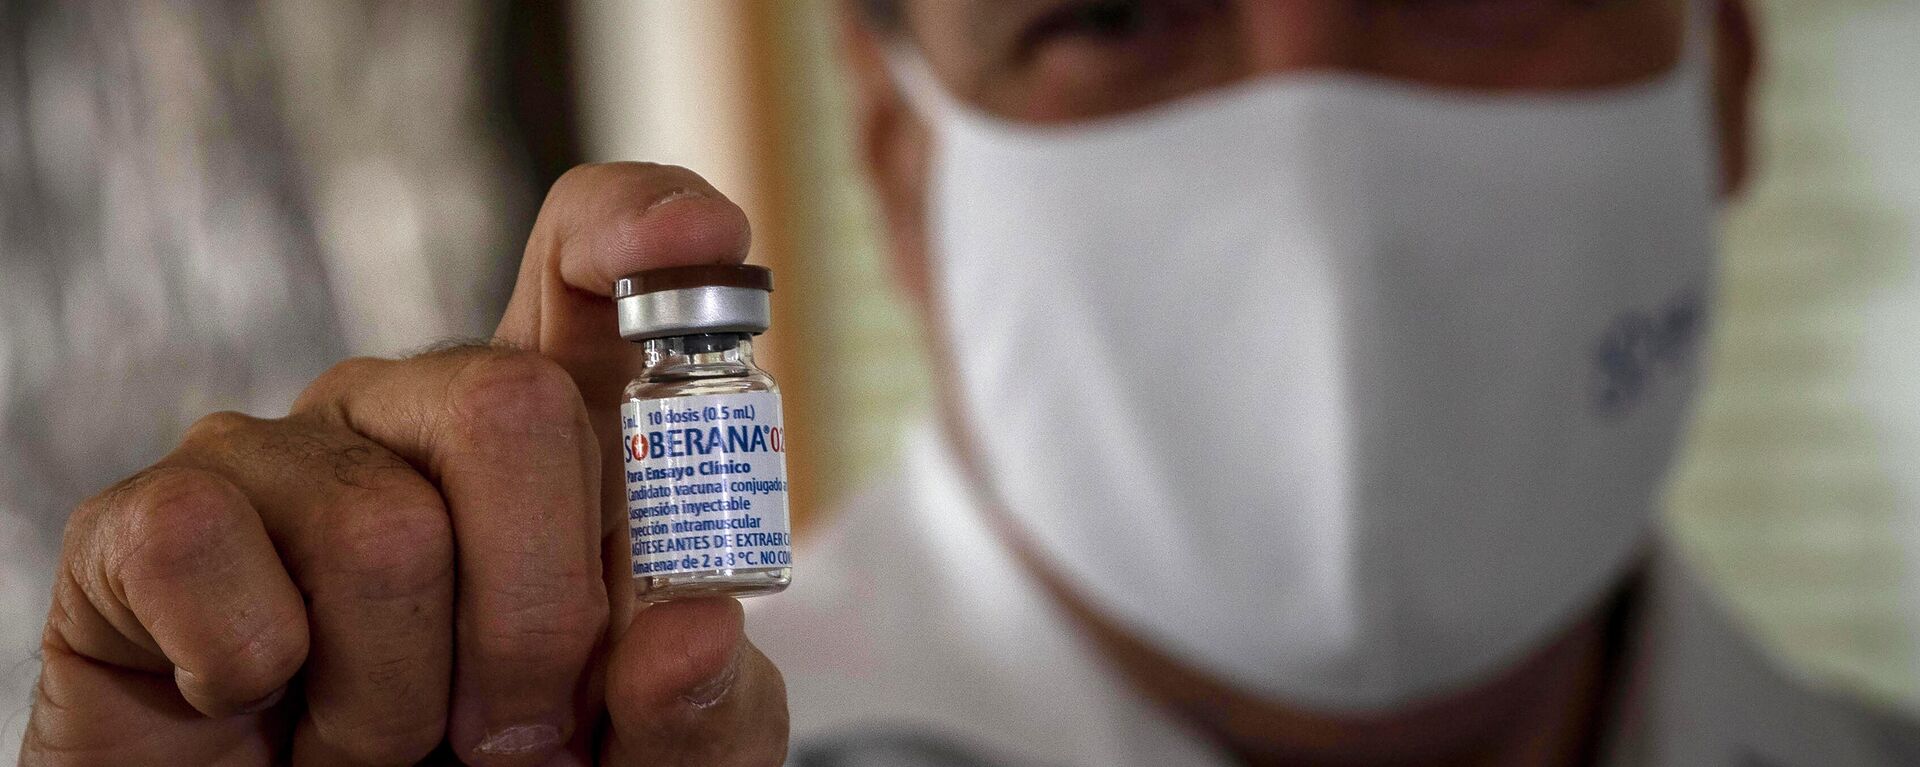 Un médico sostiene la vacuna cubana Soberana 02 contra COVID-19 - Sputnik Mundo, 1920, 15.04.2021